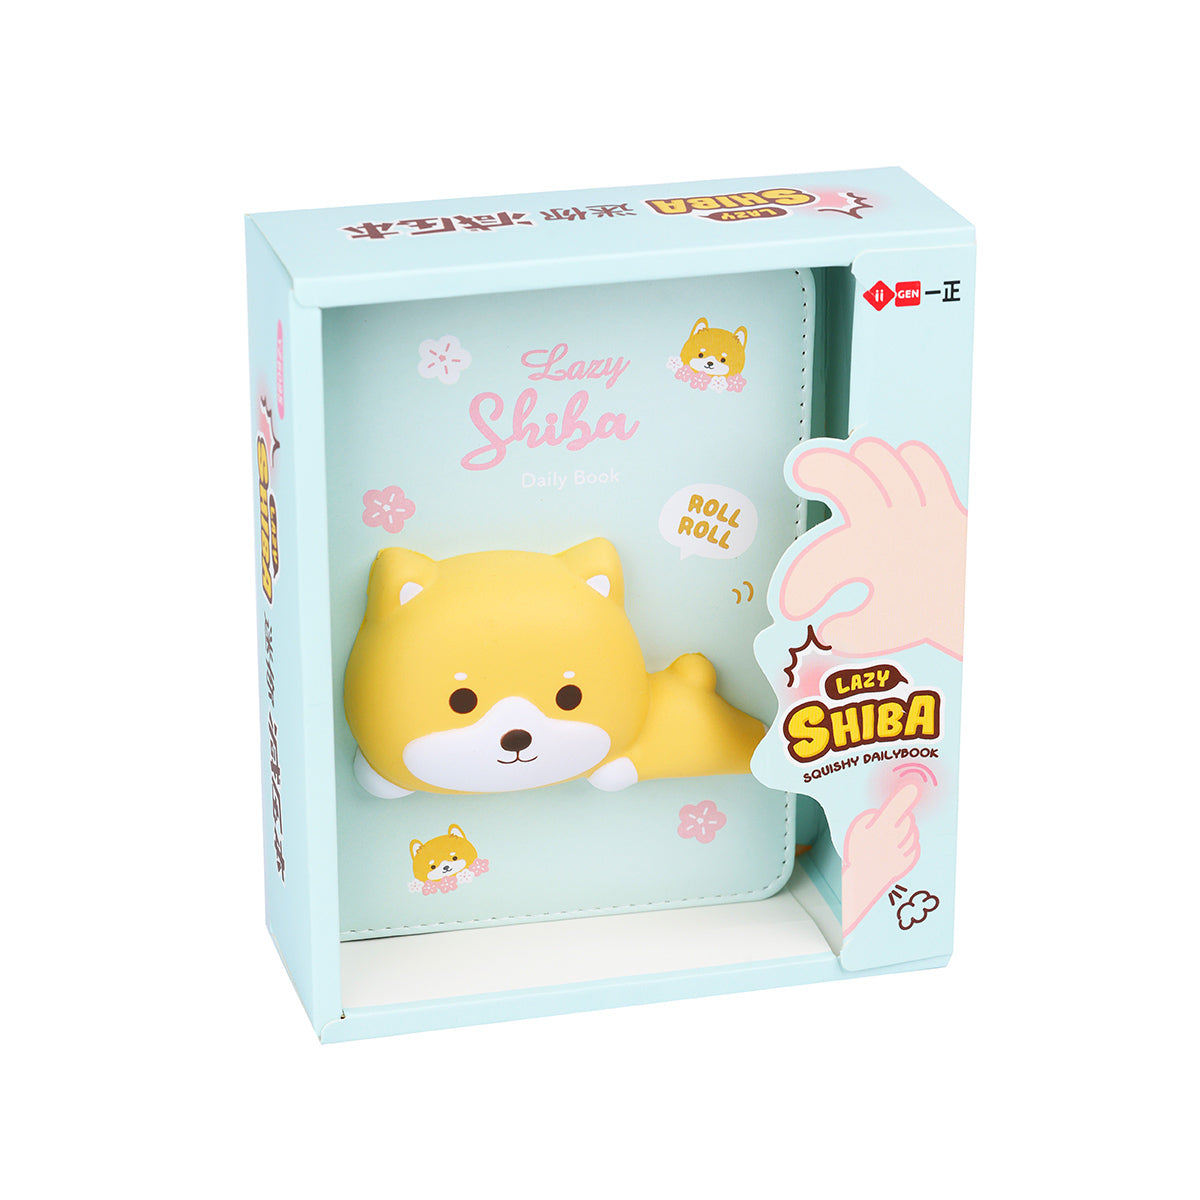 Cute 3D Shibu Mini Squishy Notebook